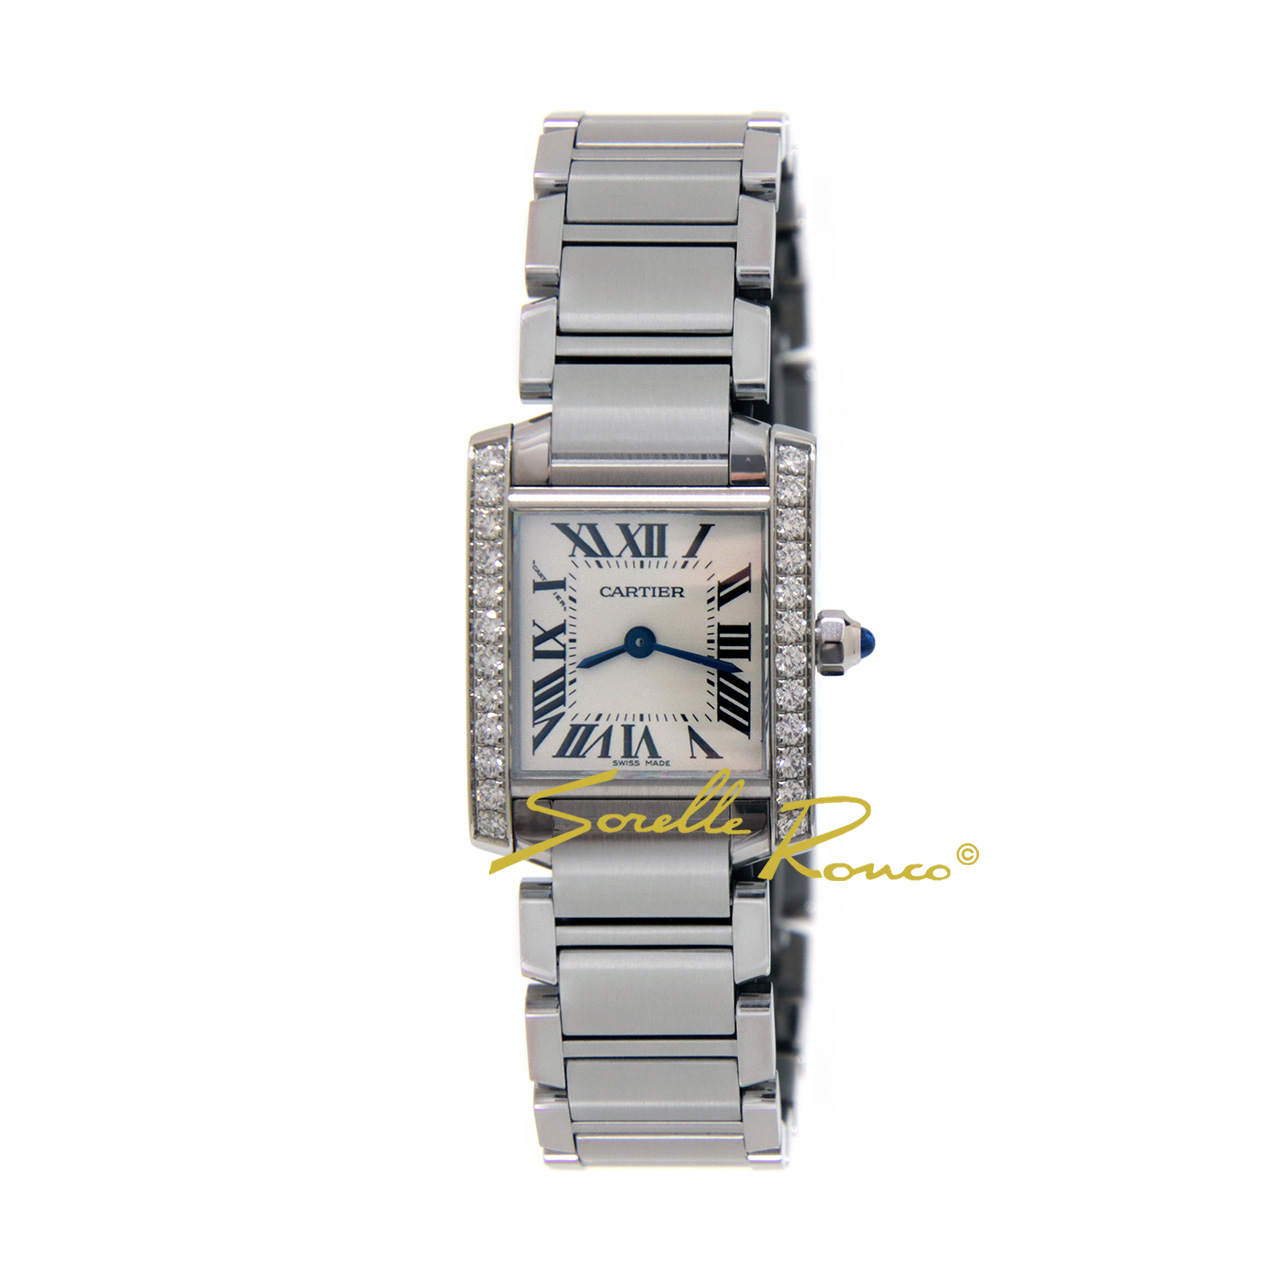 Cartier Tank Francaise è un orologio elegante da donna dotato di movimento al quarzo con cassa in acciaio e quadrante argentato con diamanti ai lati della cassa. A corredo troviamo un bracciale in acciaio con chiusura deployante.